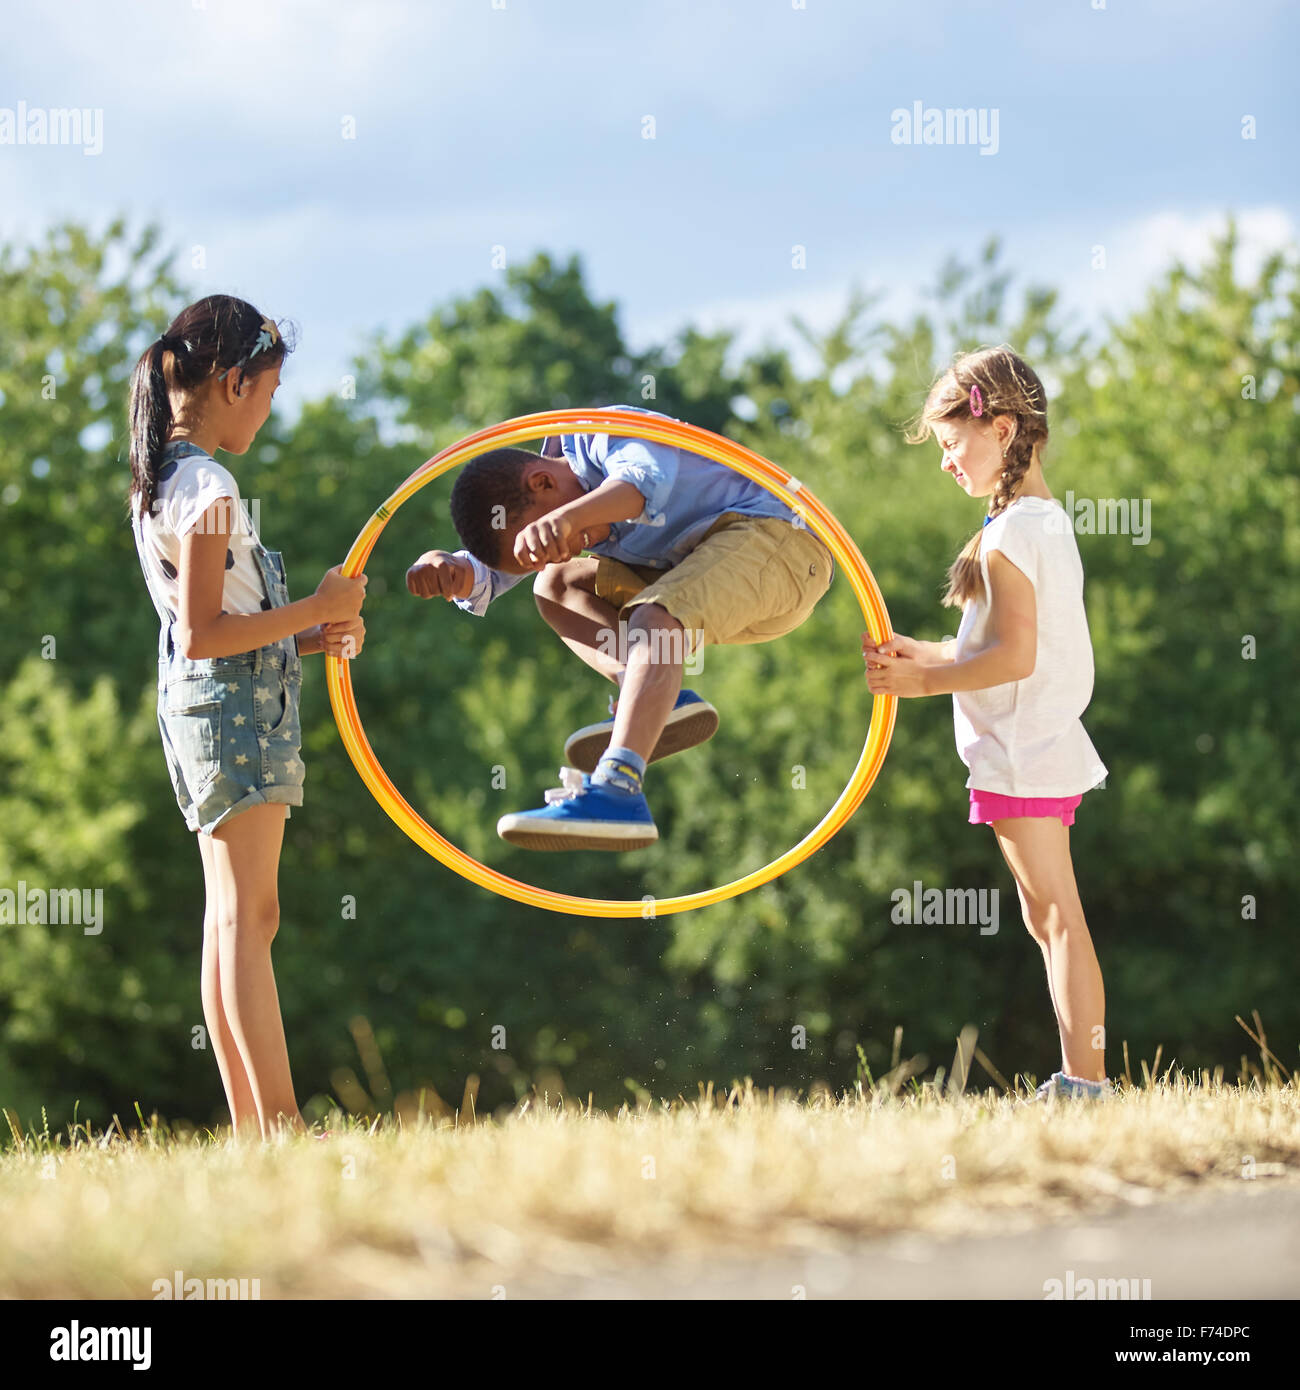 Niños jugando en un parque infantil con una niña haciendo hula hoop con una  chaqueta naranja fotos de archivo